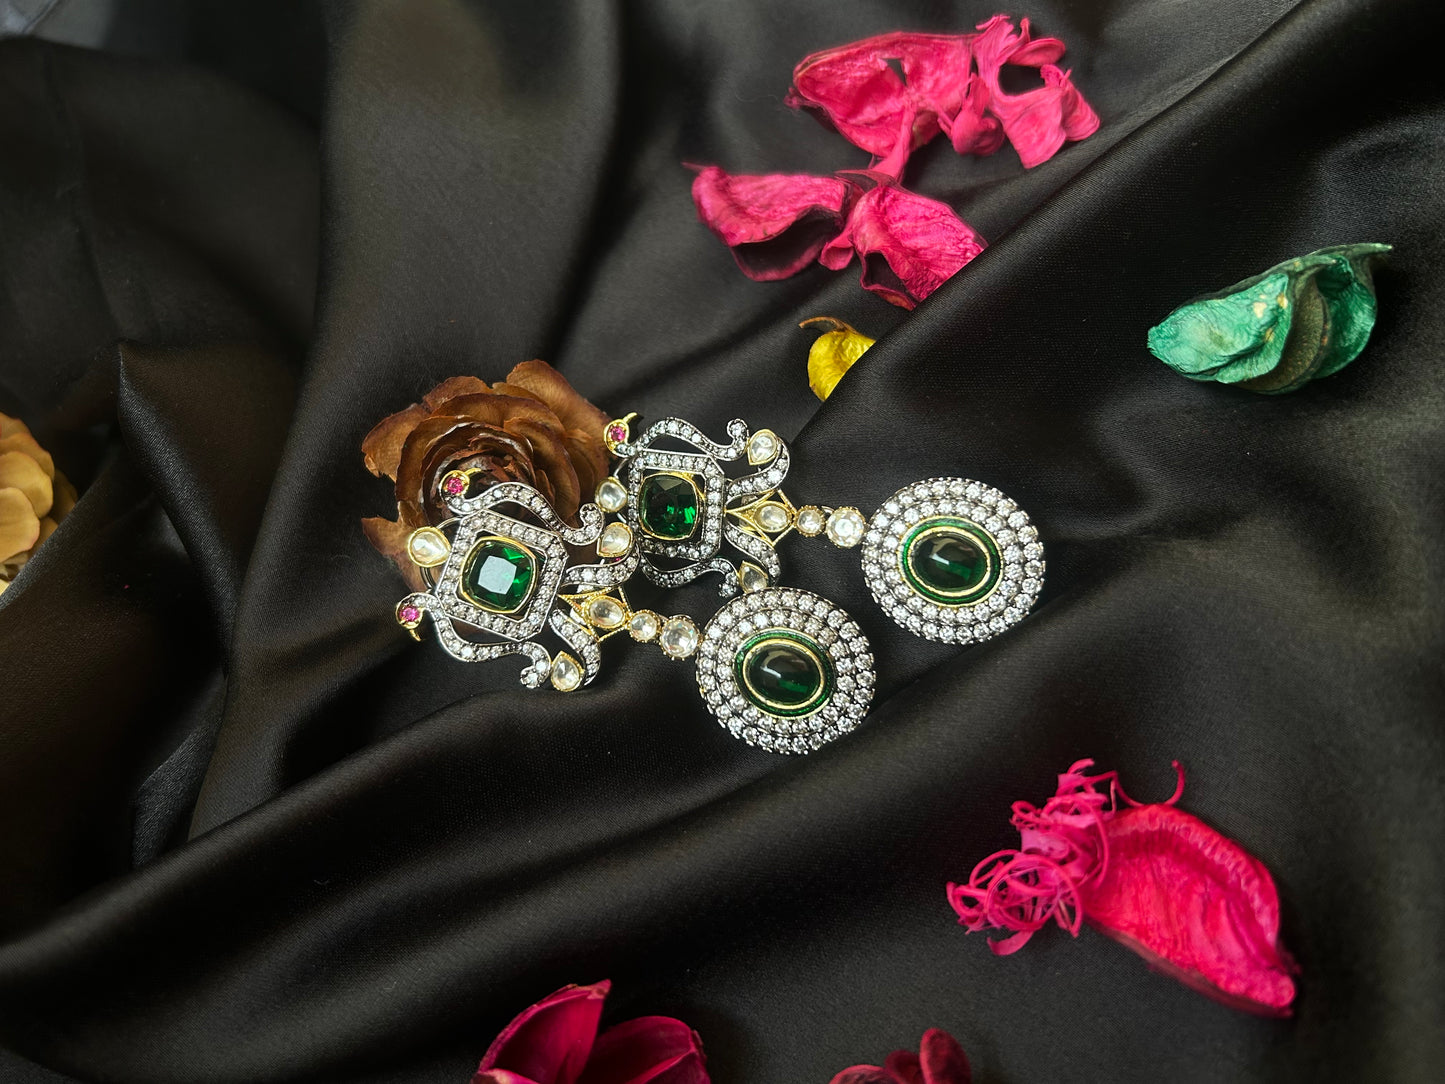 Jasika emerald necklace